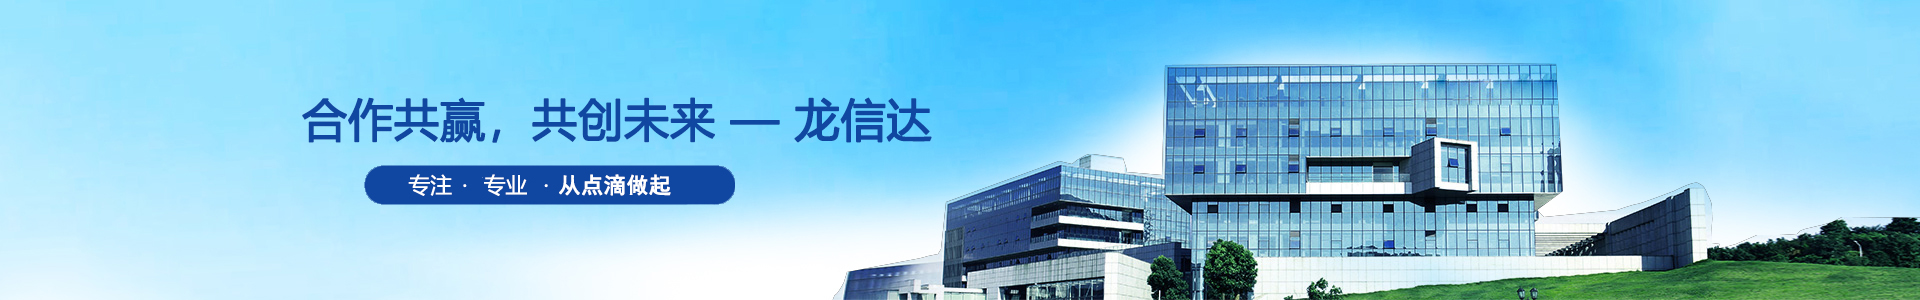 龙信达 | 光敏电阻、光敏传感器、硅光电�v二极管-深圳市龙信达科技有限公司